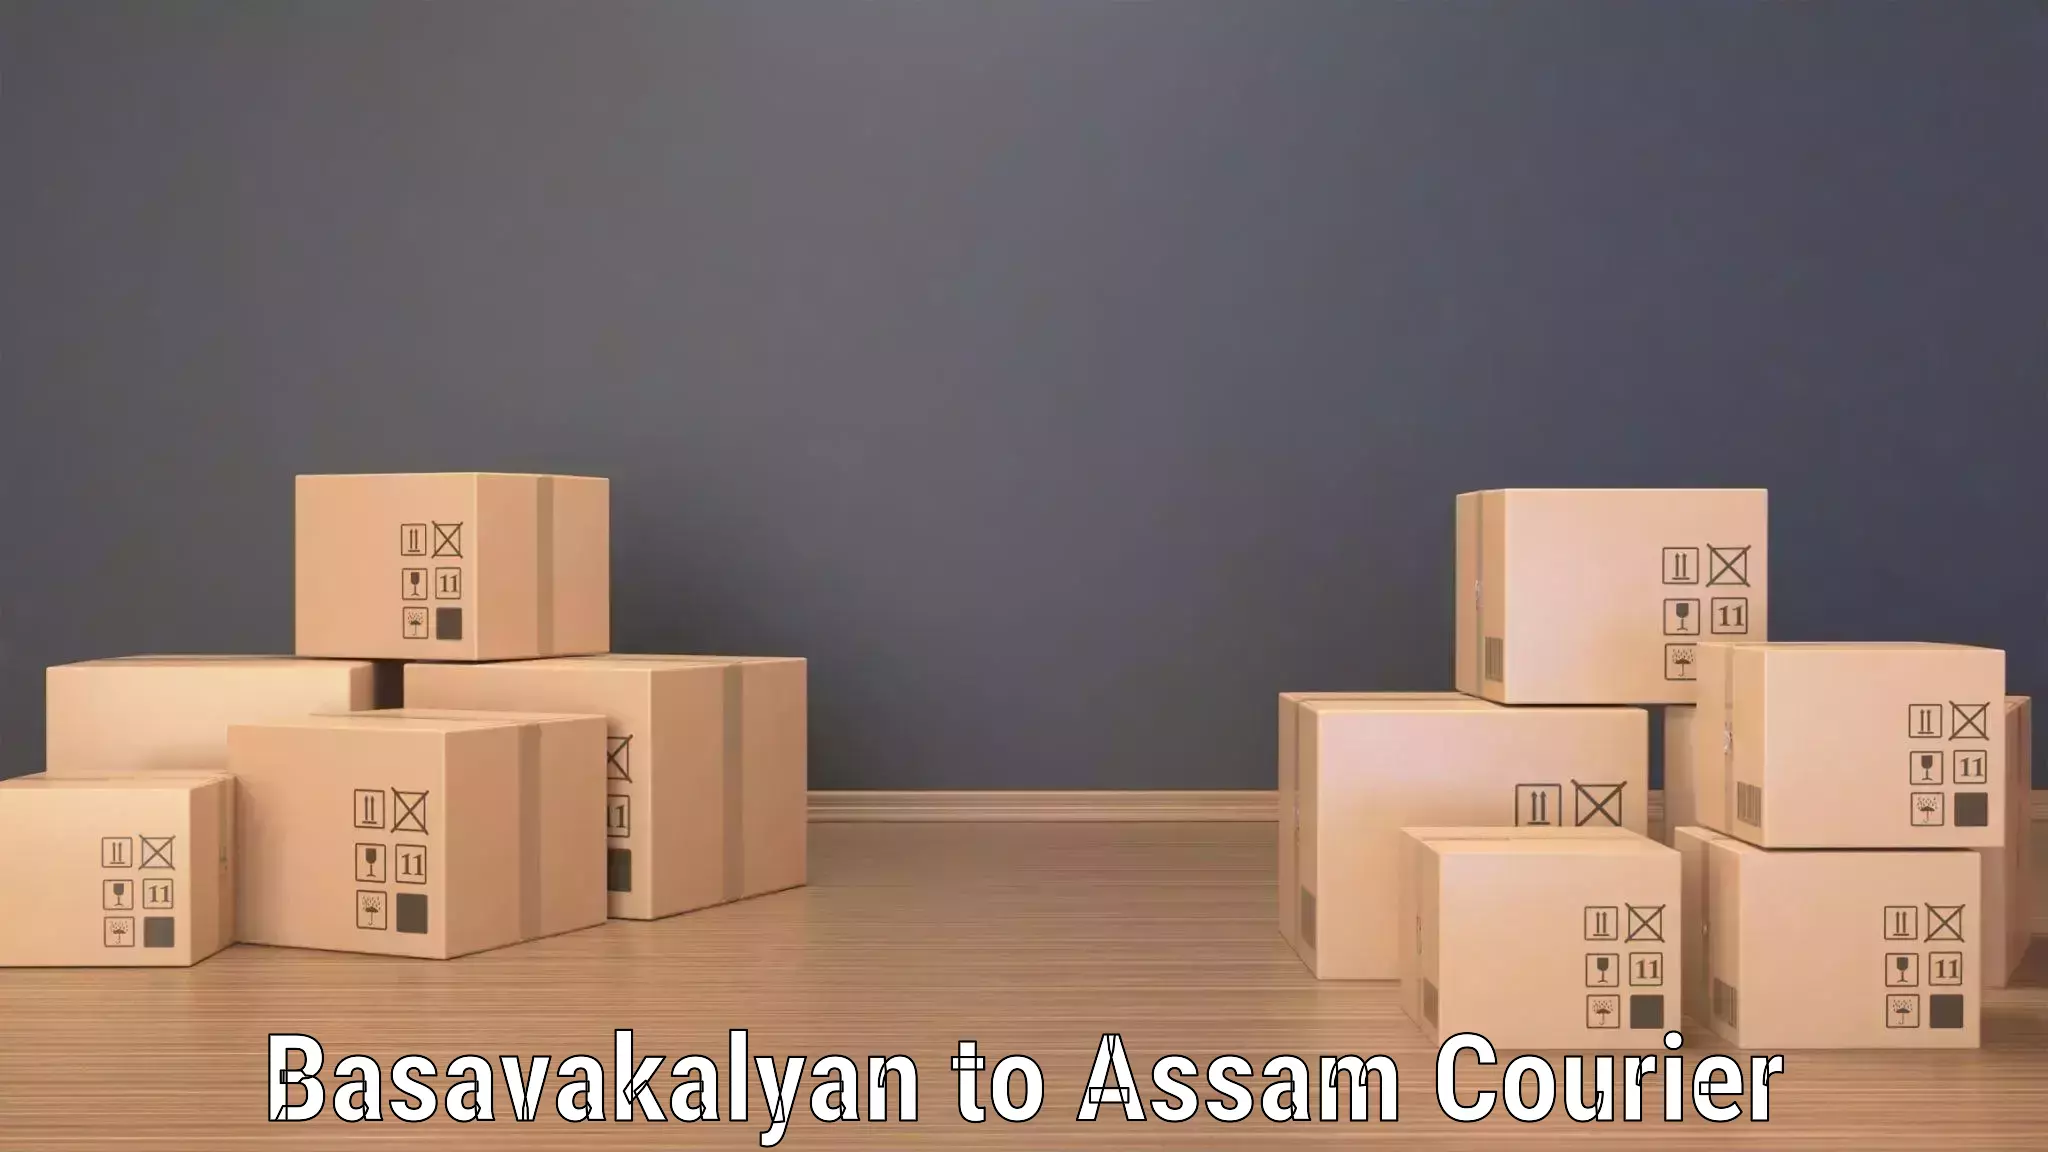 Comprehensive shipping network Basavakalyan to Dhubri